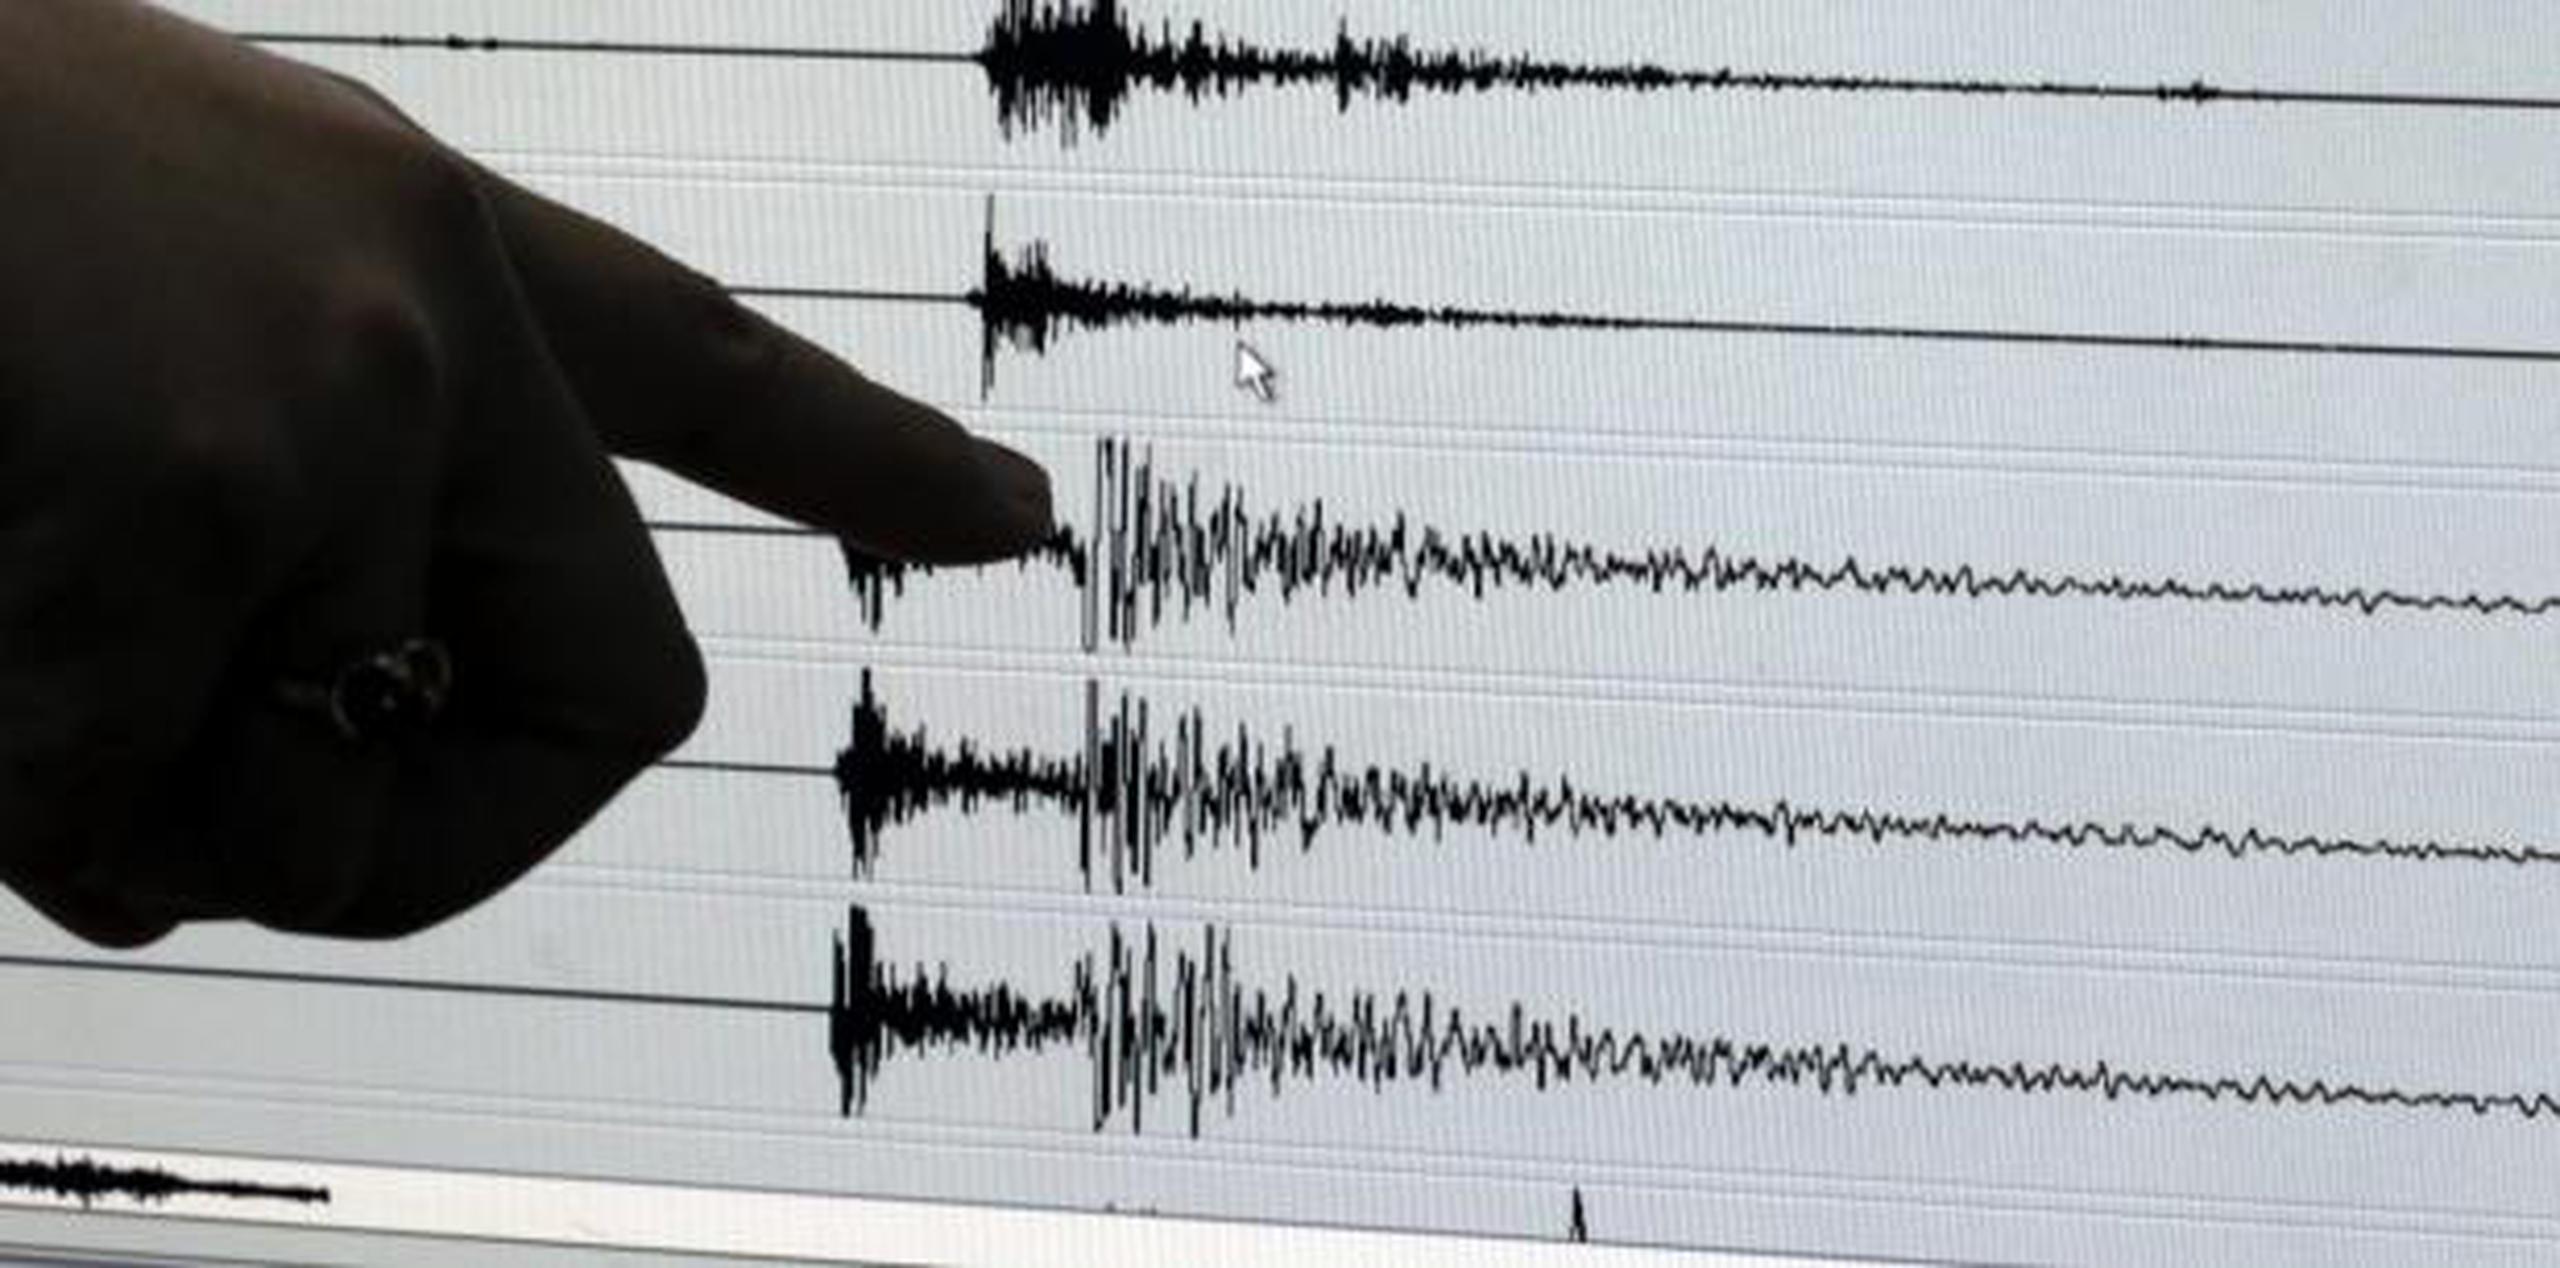 La Agencia Meteorológica de Japón agregó que el epicentro del sismo se localizó frente a la costa occidental de Yamagata. (Archivo)